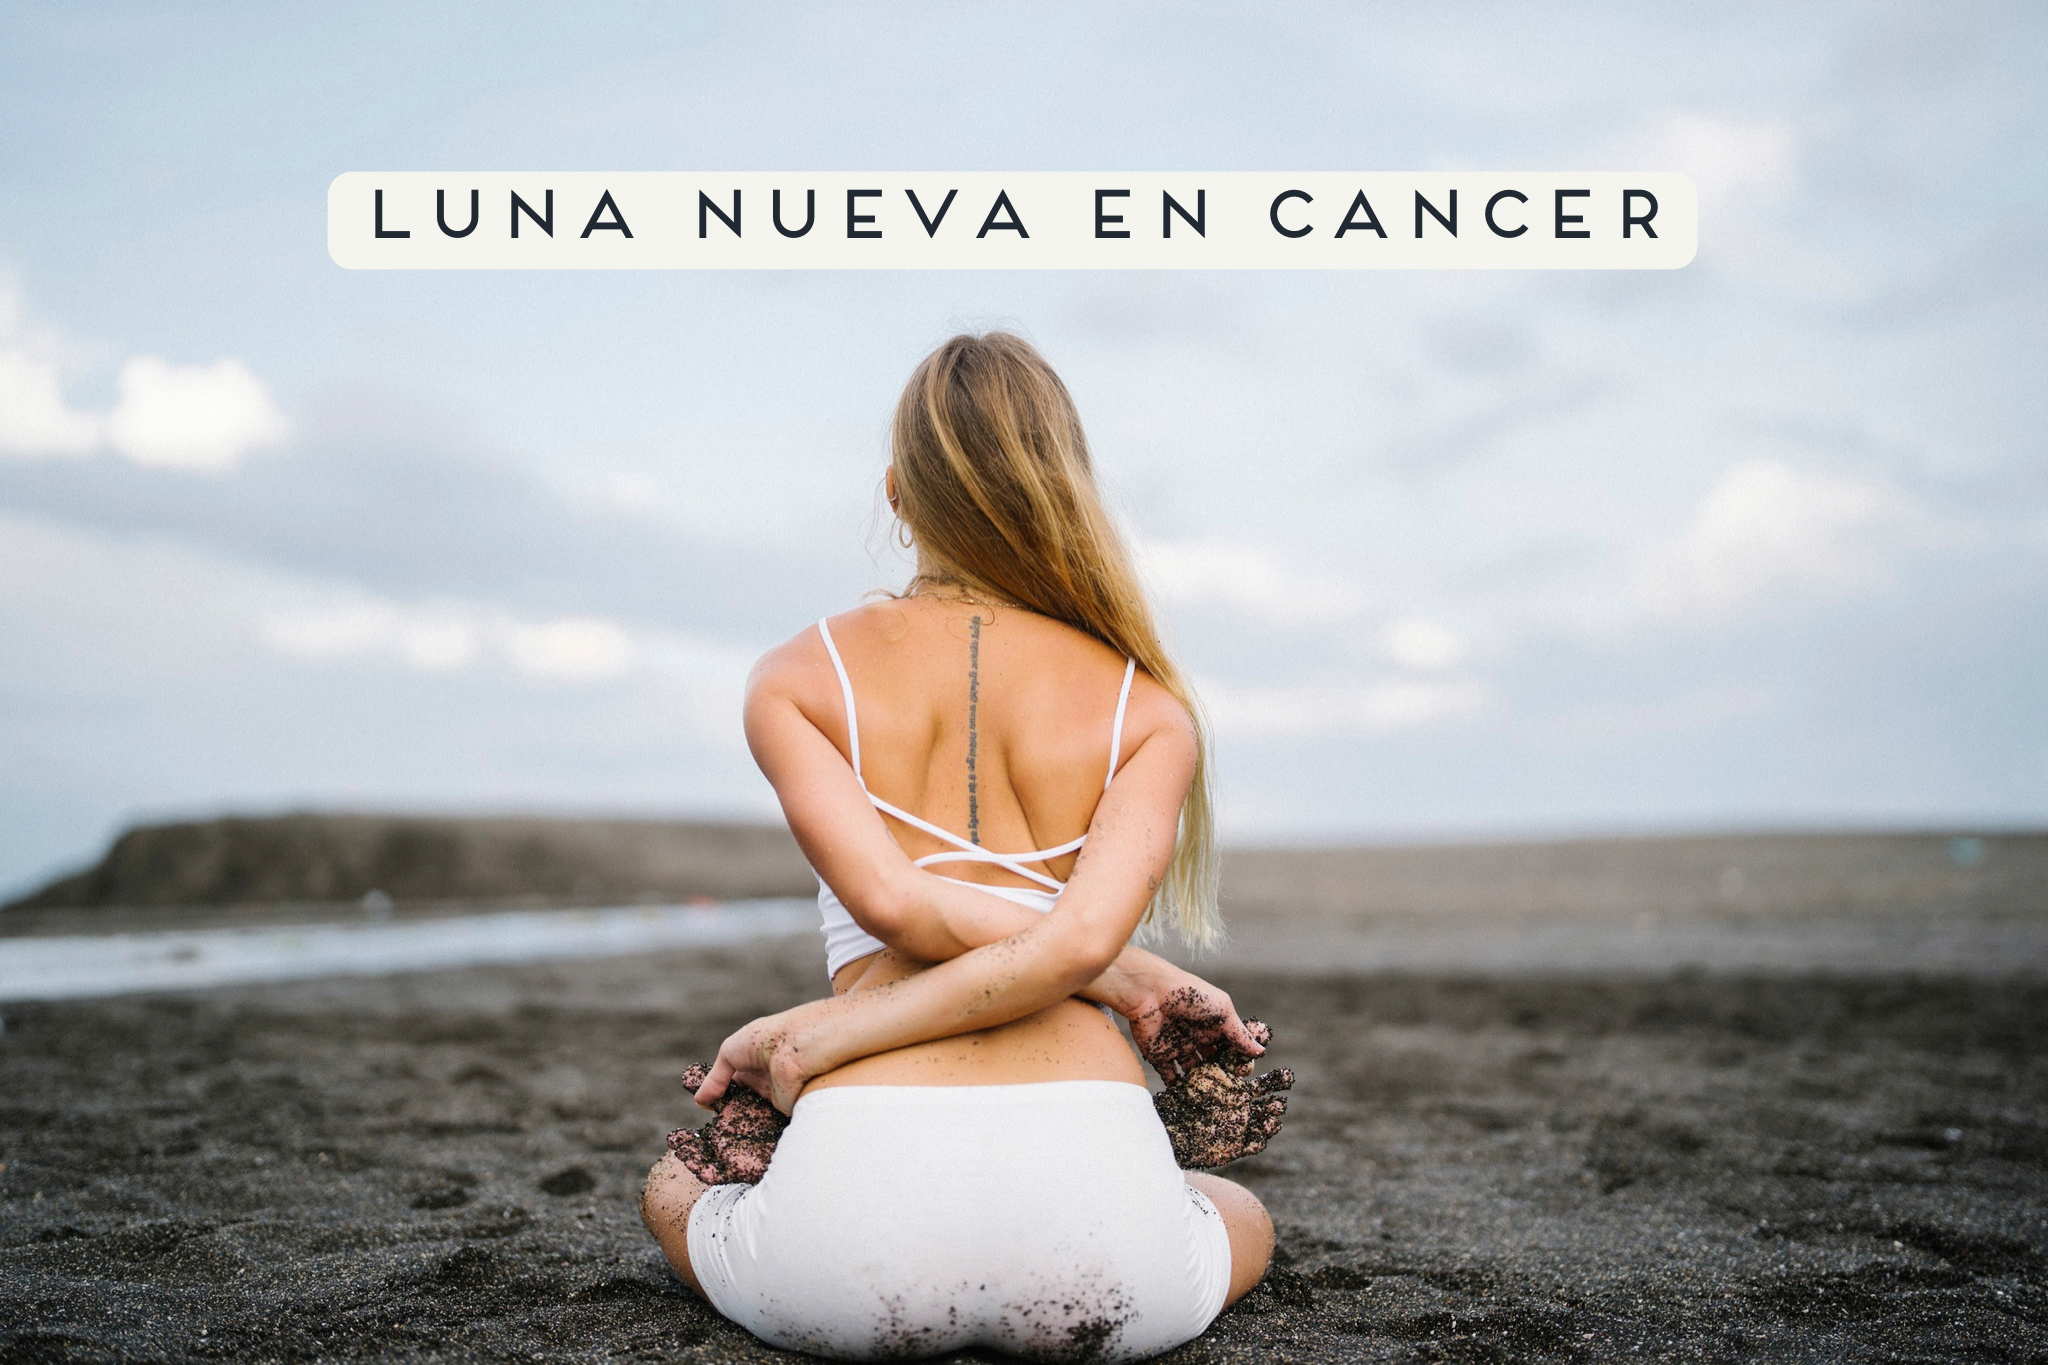 Luna nueva en cancer 29.06.22